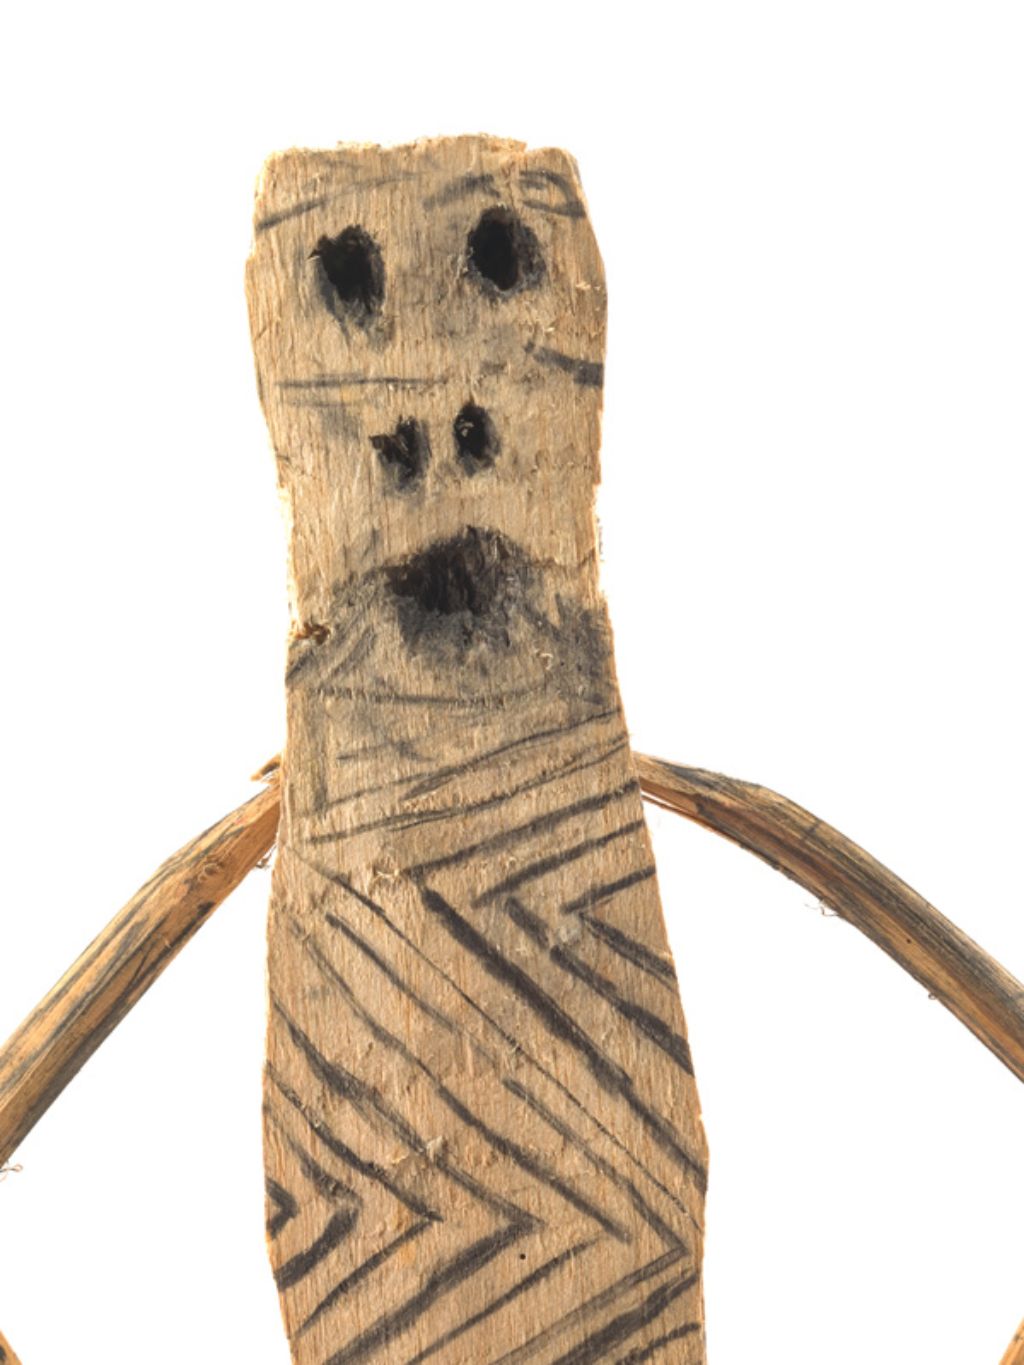 Holzmännchen mit dünnen Armen und einem mit Zickzacklinien verzierten Körper, dessen Augen, Nasenlöcher und Mund aus Löchern bestehen.